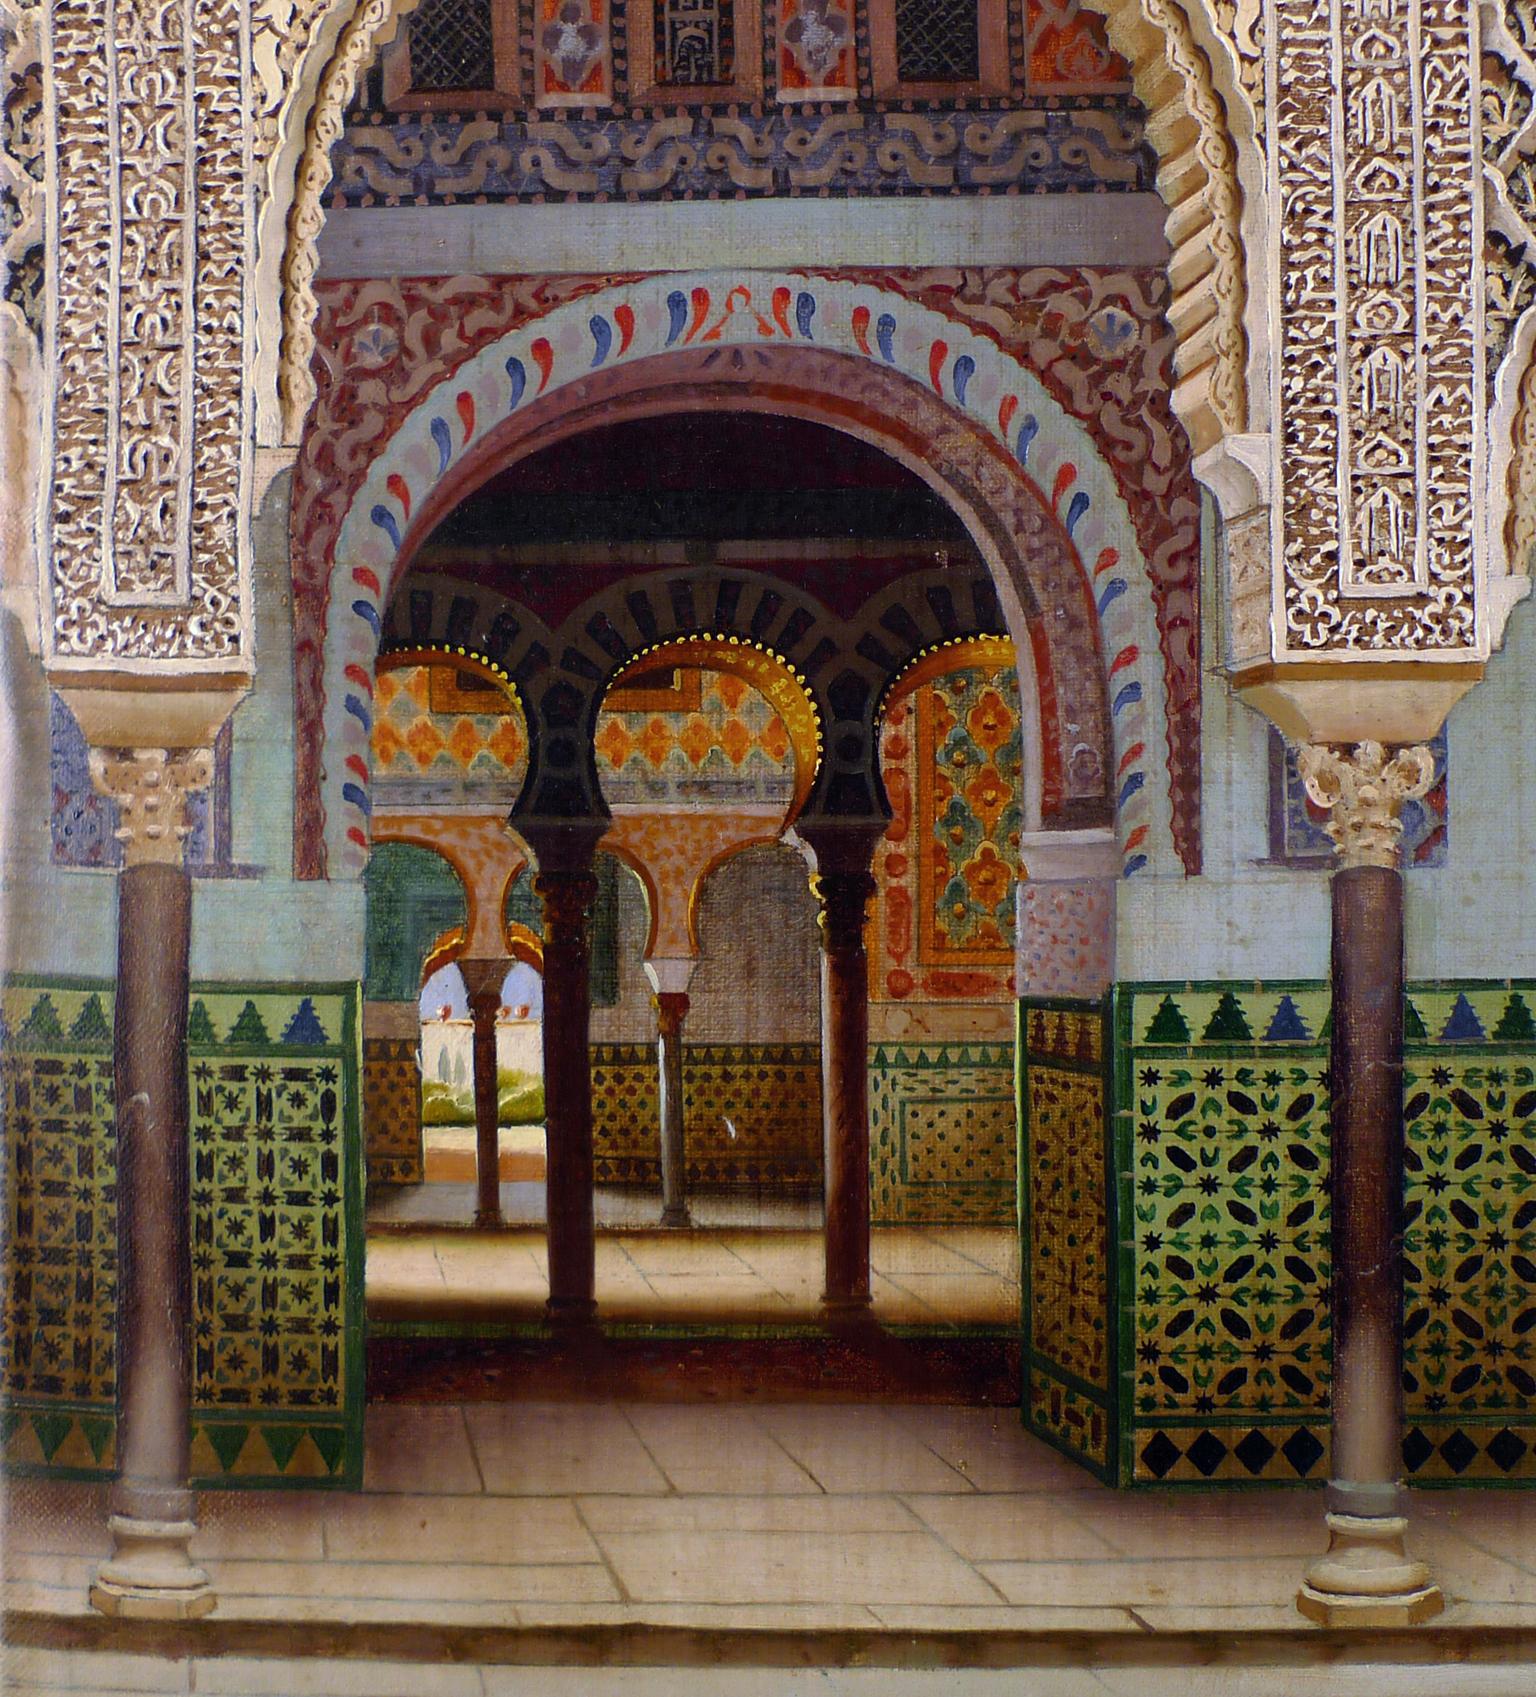 « Intérieur de Alcazar of Seville », huile sur toile du début du 20e siècle par F. Liger - Réalisme Painting par Fernando Liger Hidalgo